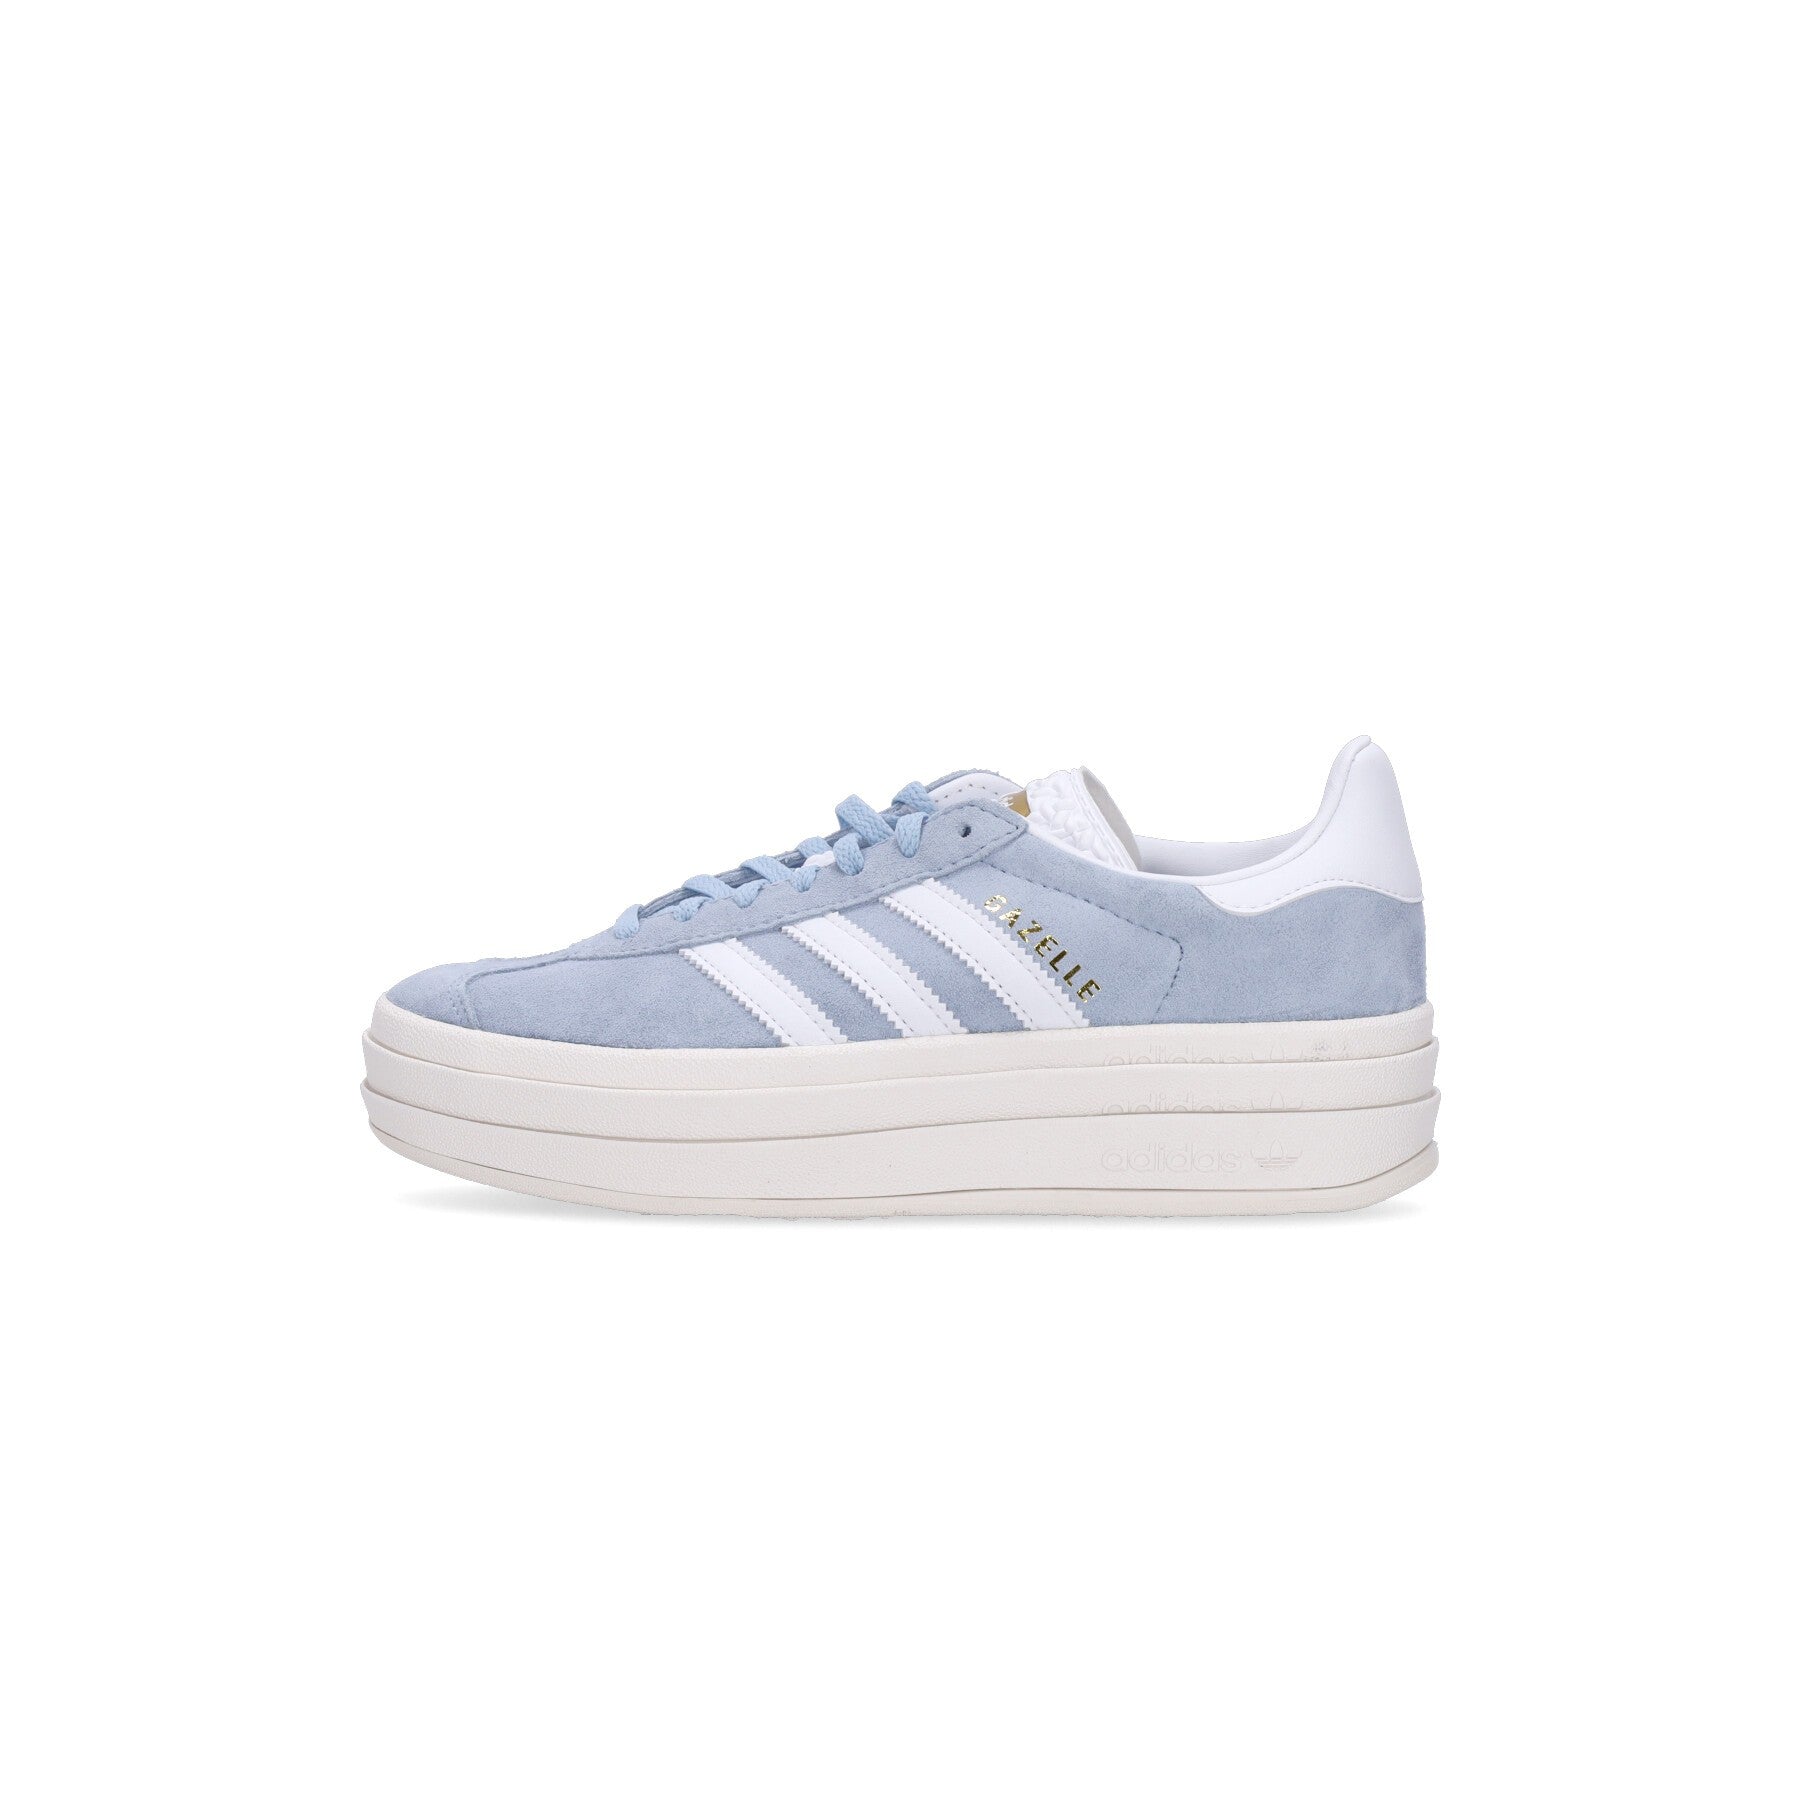 Adidas, Scarpa Bassa Donna Gazelle Bold W, Clear Sky/footwear White